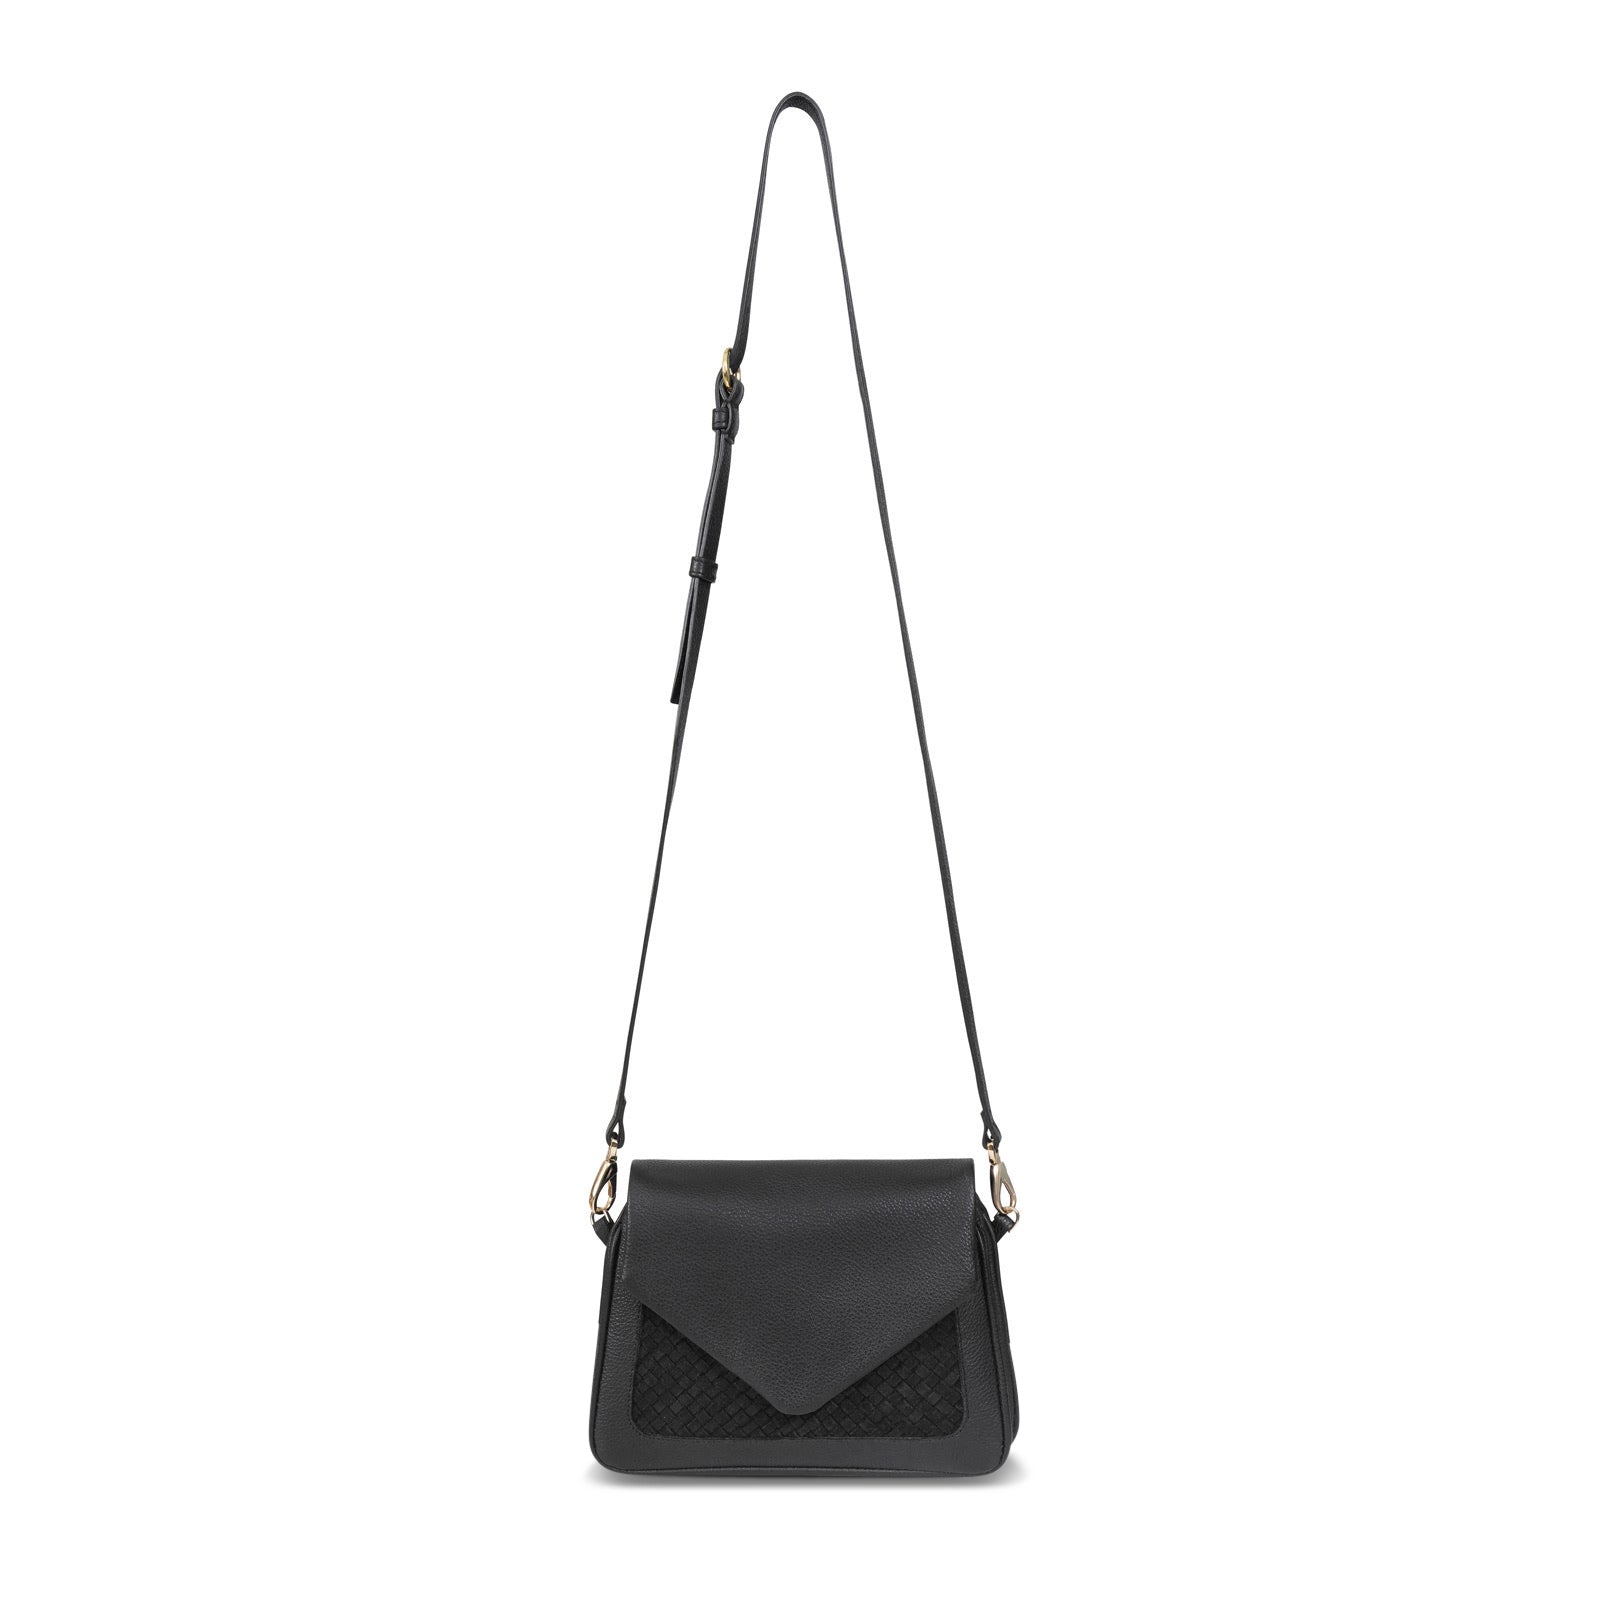 Victoria Mini Shoulder Bag  Mini shoulder bag, Black leather crossbody bag,  Convertible crossbody bag